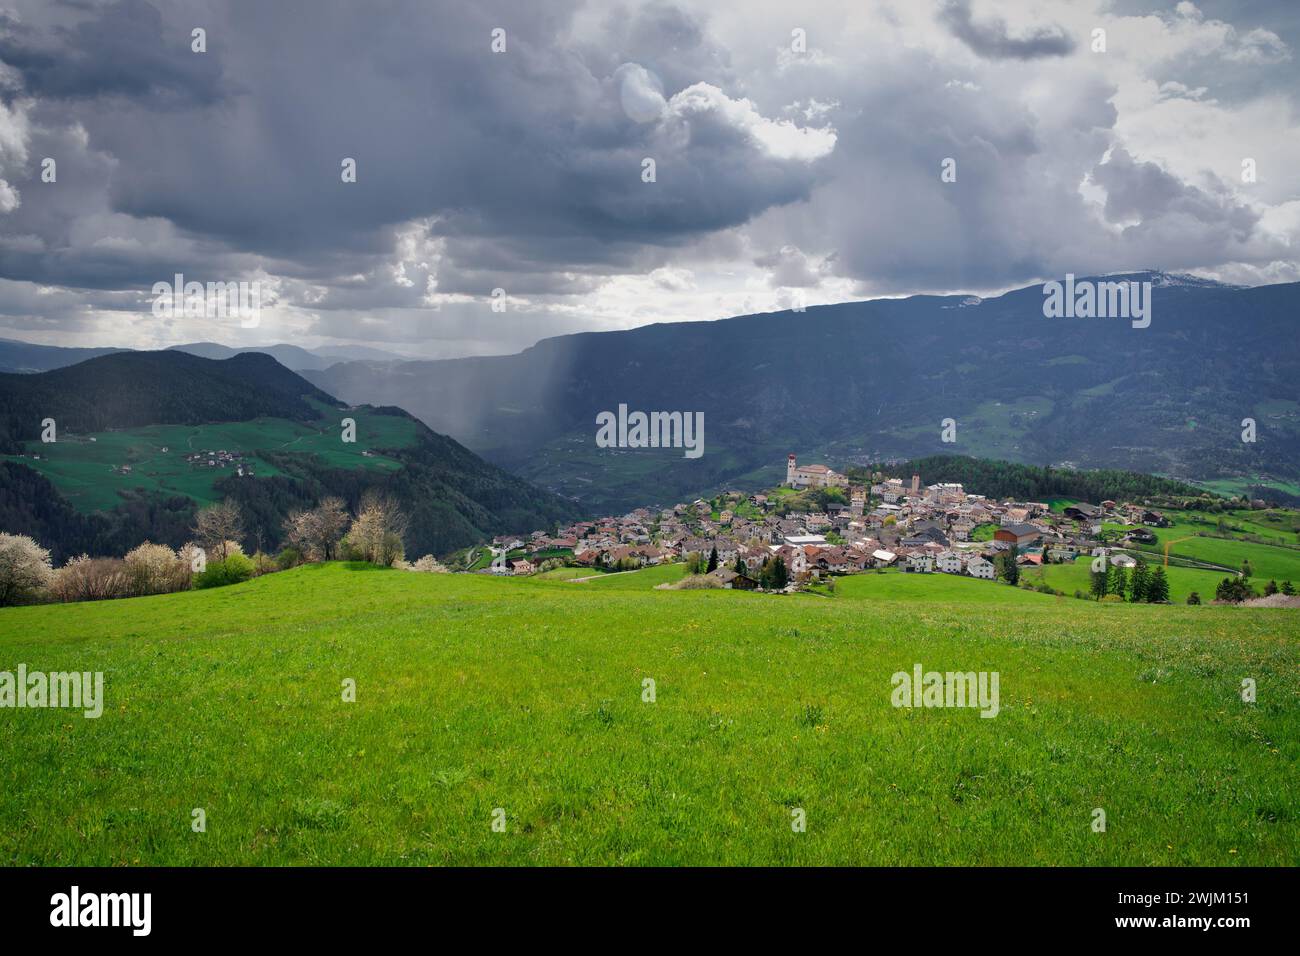 Fotografieren Sie die Landschaft von Laion in Italien mit dem Regen im Tal Stockfoto